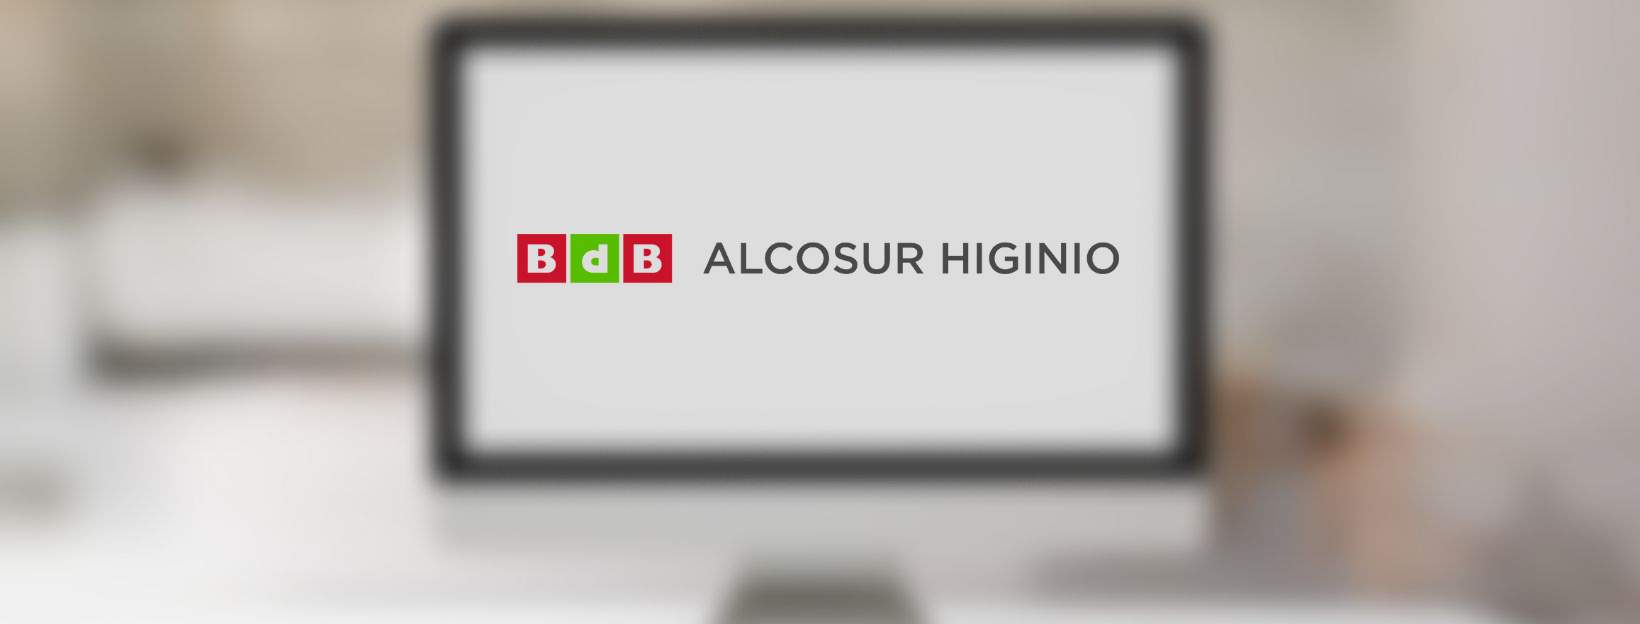 Pagina web para Alcosur Higinio